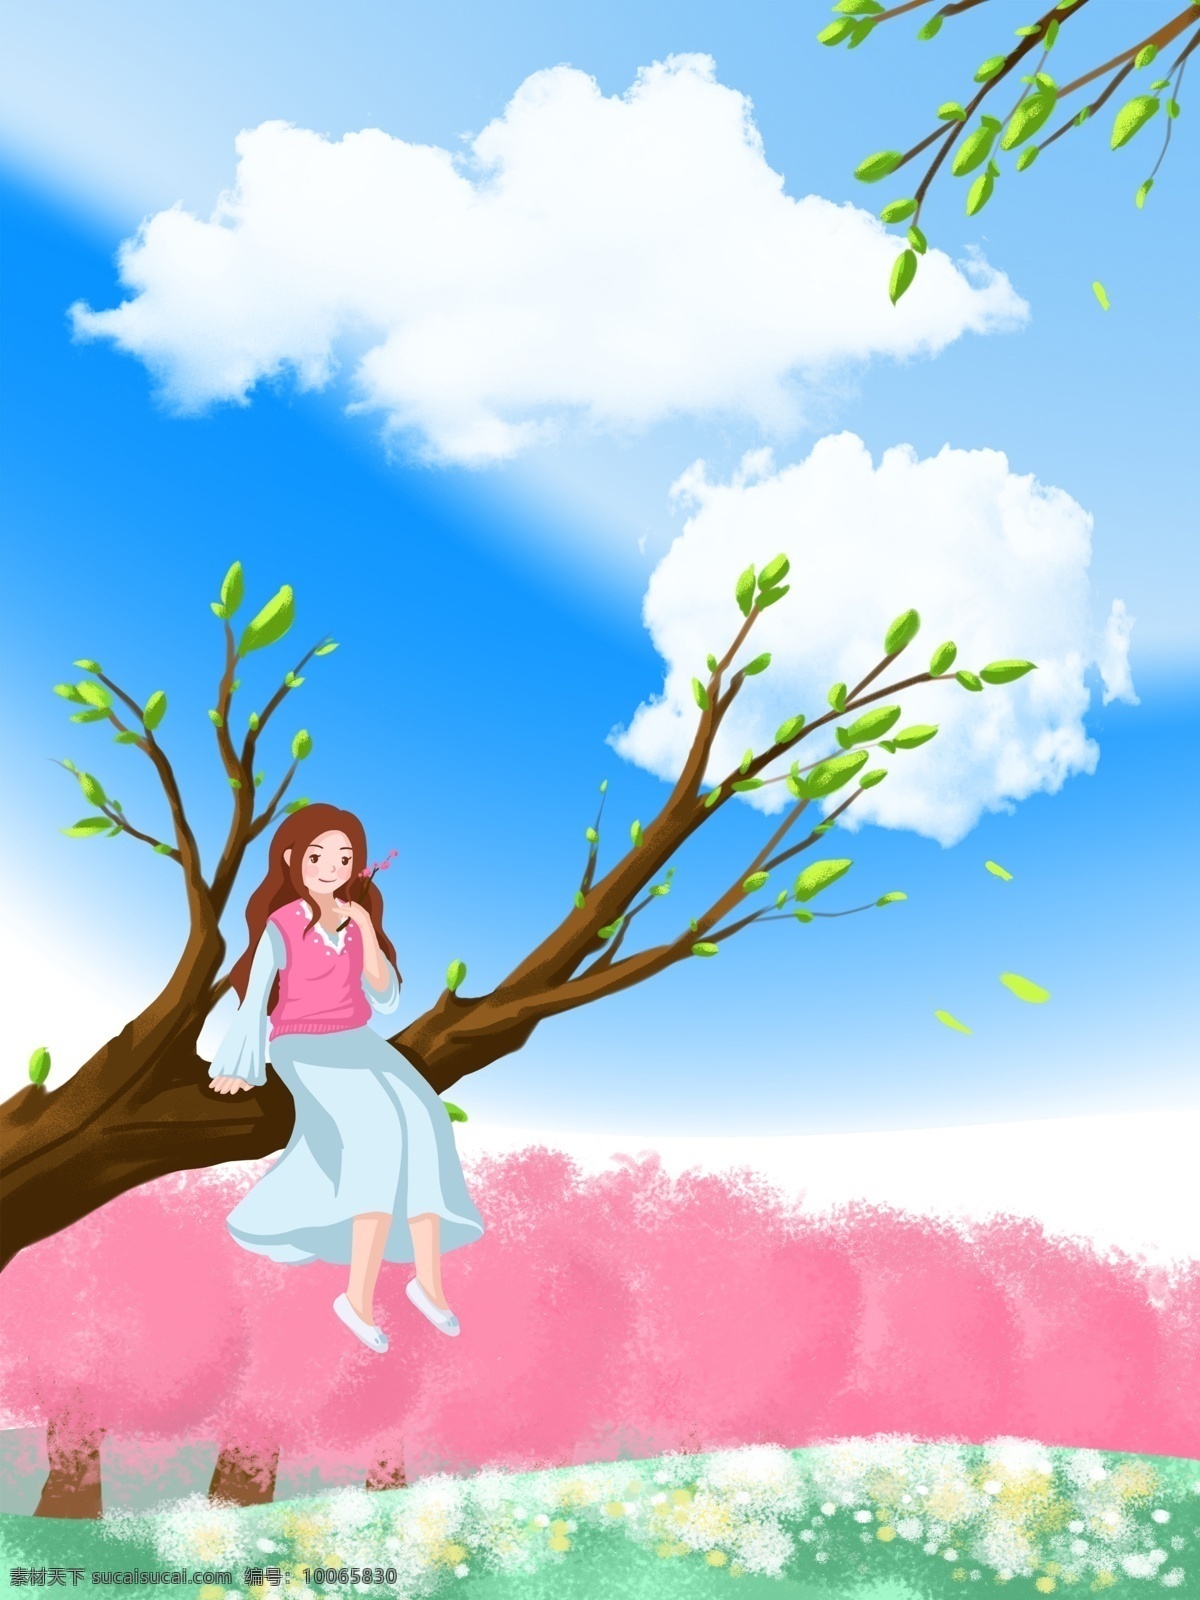 春季 手绘 郊外 女孩 背景 桃花林 树要 蓝天 白云 春天